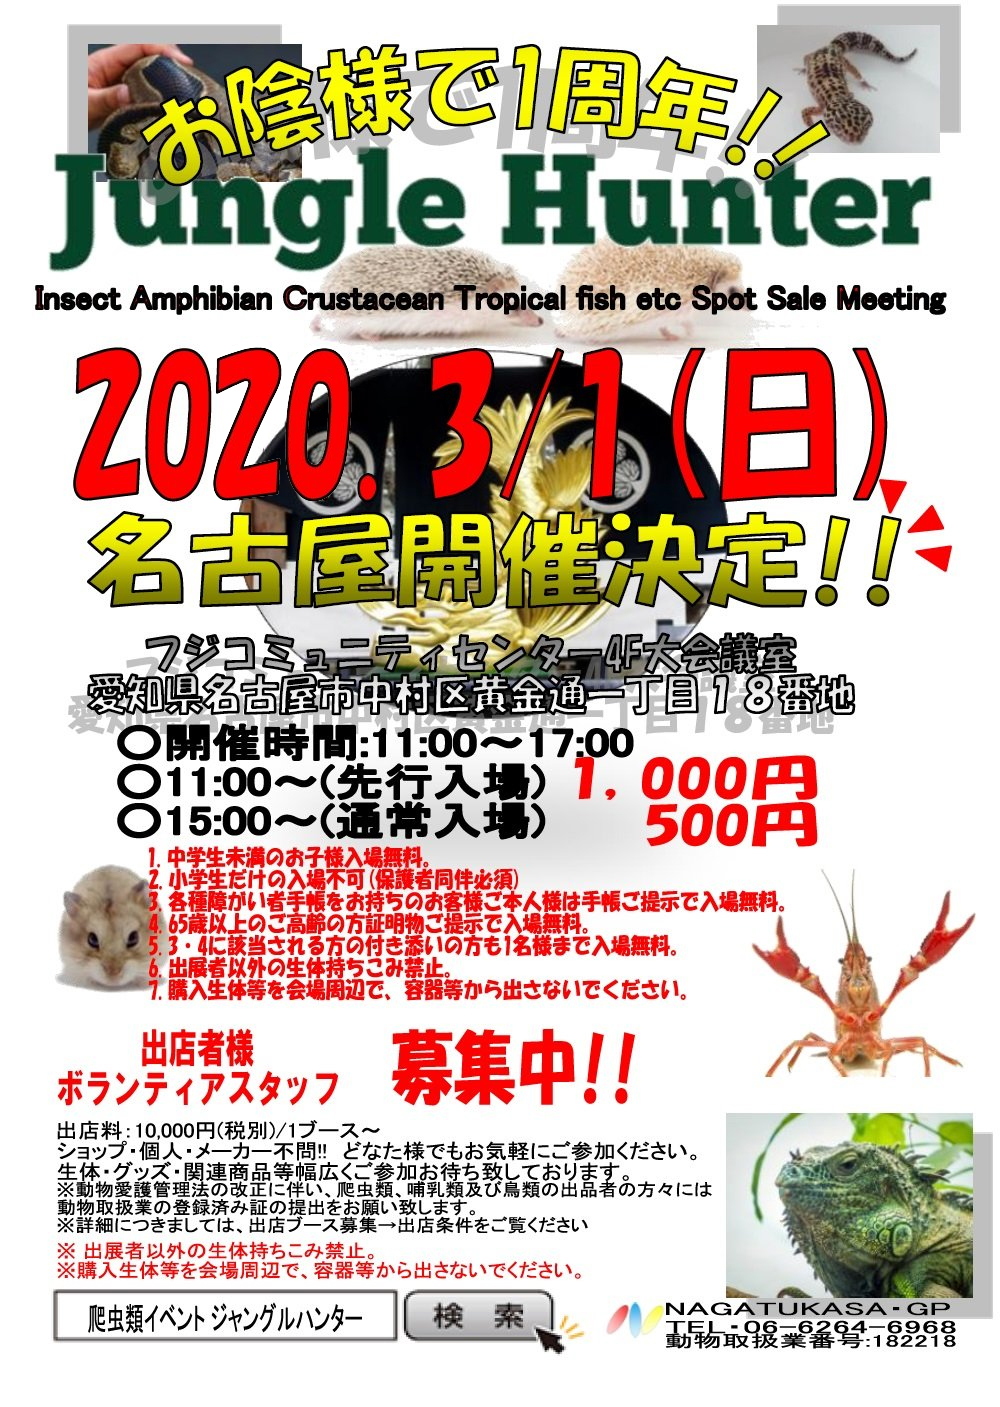 ジャングルハンター In 愛知 爬虫類イベントカレンダー